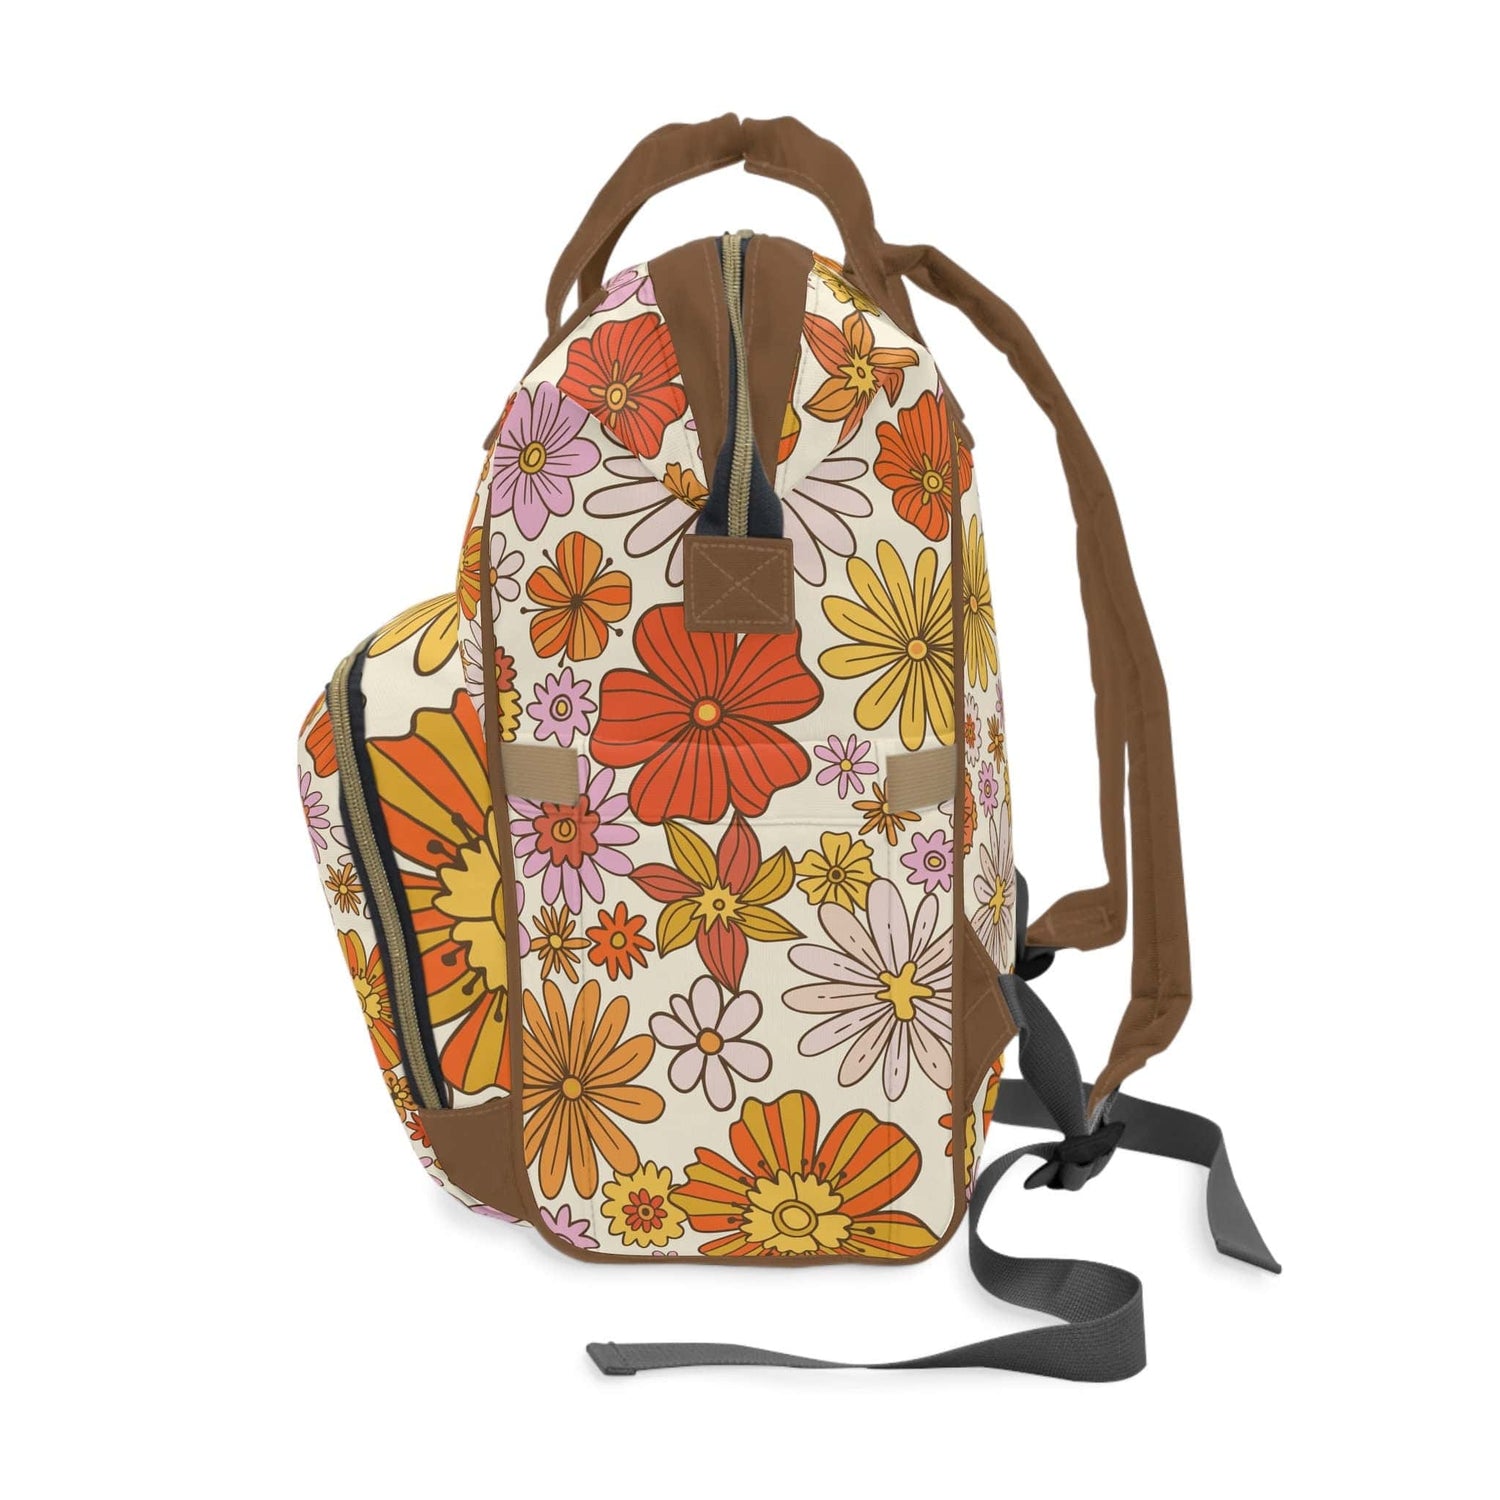 Kate McEnroe New York Retro 70s Groovy Hippie Flower Power Multifunctional Diaper Backpack, MCM Weekender Bag, Carry - on Luggage, Multipurpose BackpackDiaper Bags30493279754033541251